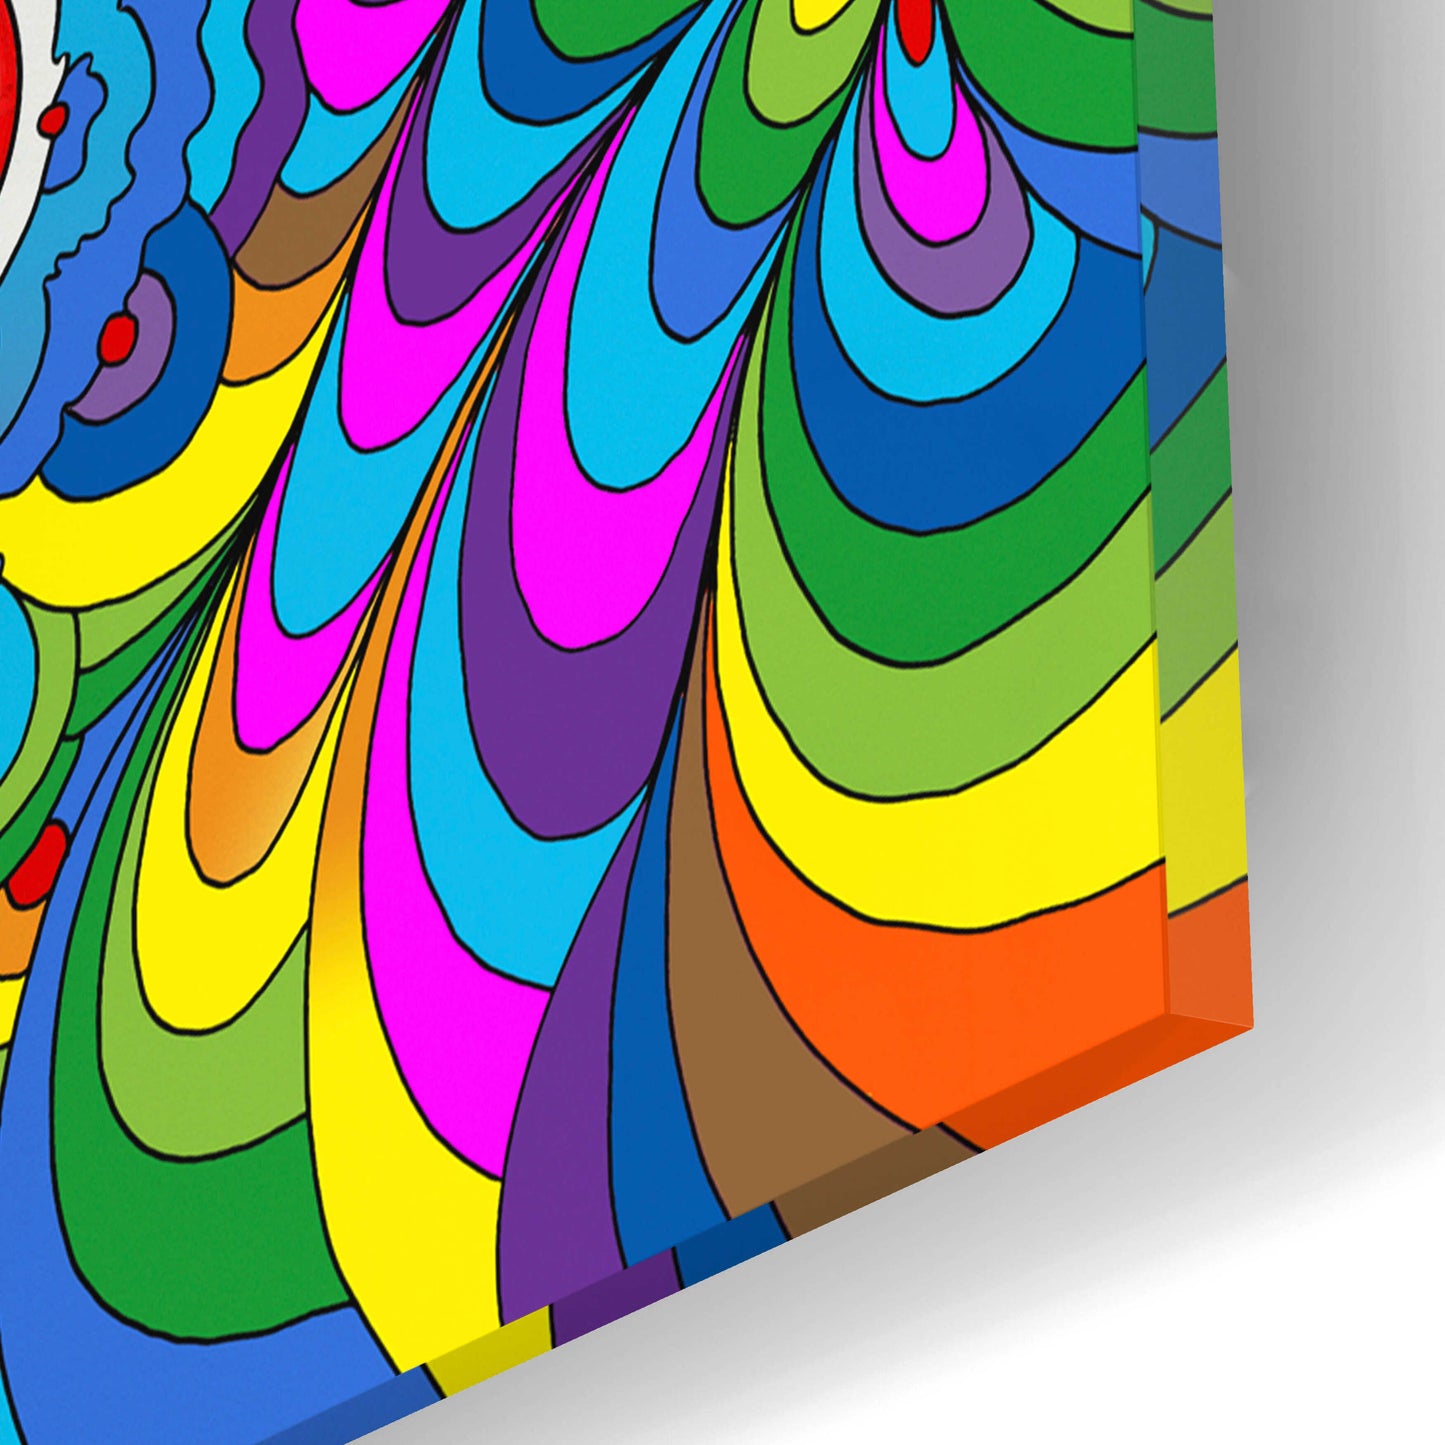 Epic Art 'LSD Molecule' by Howie Green, Acrylic Glass Wall Art,12x12